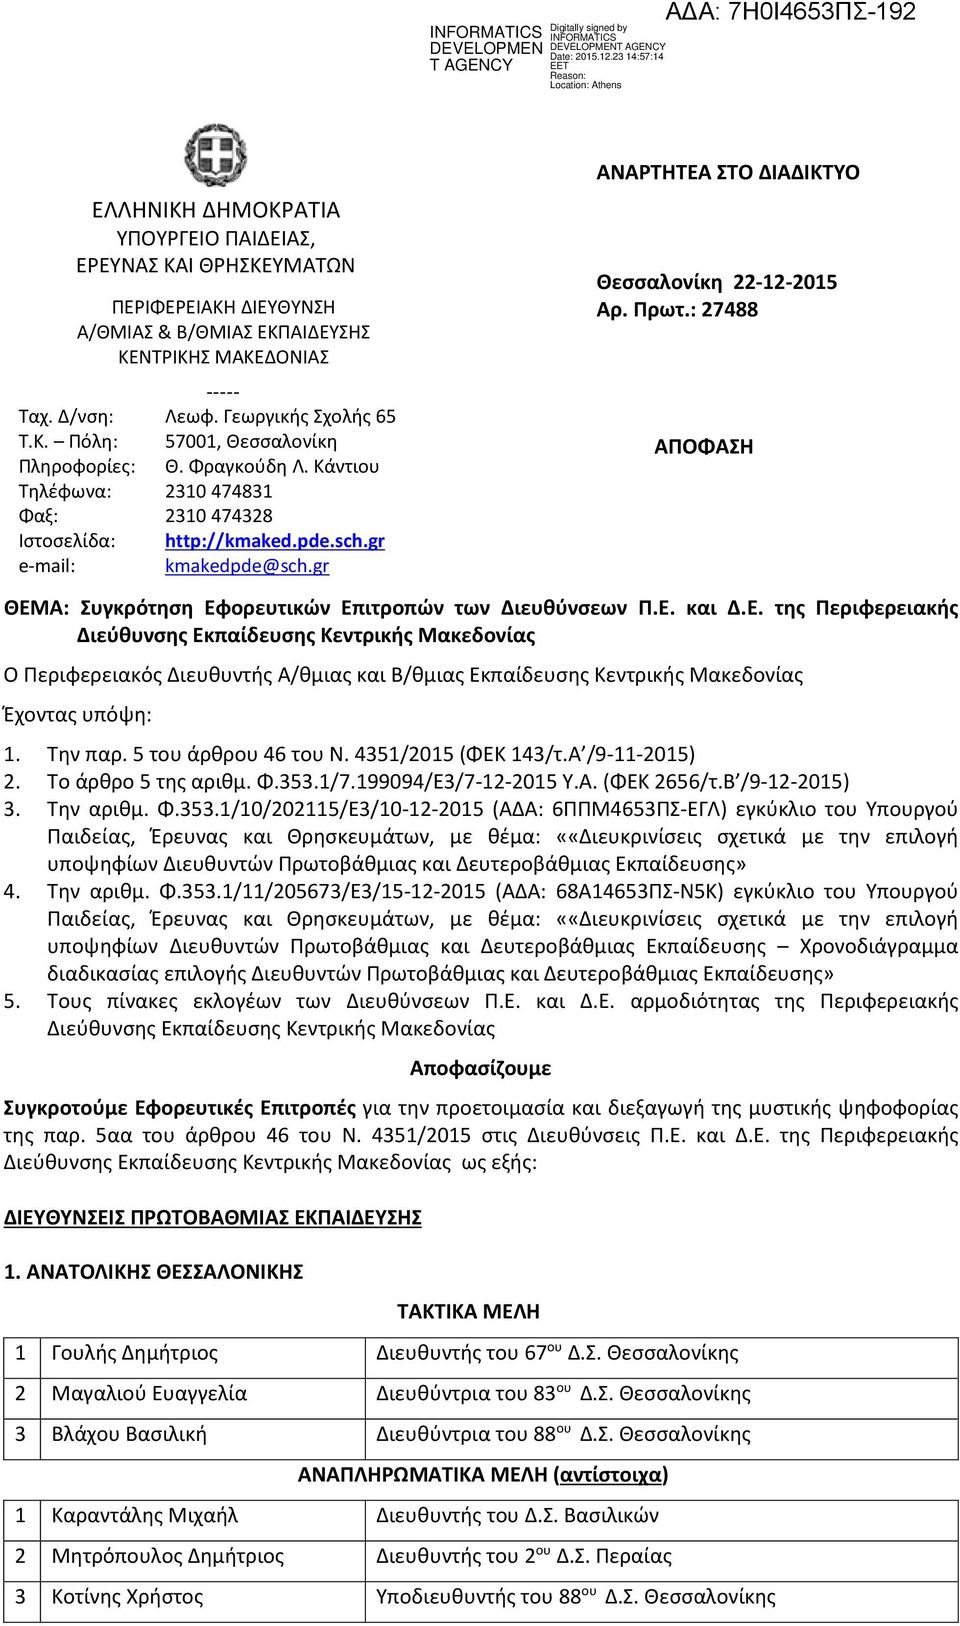 : 27488 ΑΠΟΦΑΣΗ ΘΕΜΑ: Συγκρότηση Εφορευτικών Επιτροπών των Διευθύνσεων Π.Ε. και Δ.Ε. της Περιφερειακής Διεύθυνσης Εκπαίδευσης Κεντρικής Μακεδονίας Ο Περιφερειακός Διευθυντής Α/θμιας και Β/θμιας Εκπαίδευσης Κεντρικής Μακεδονίας Έχοντας υπόψη: 1.